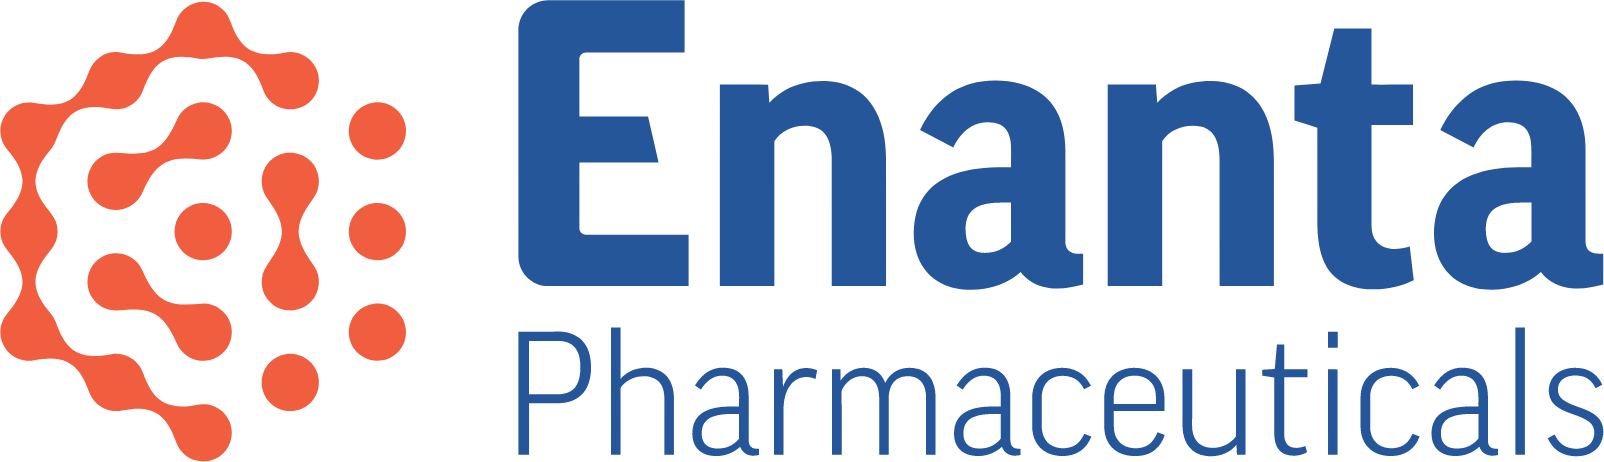 Enanta Pharmaceuticals
 logo large (transparent PNG)